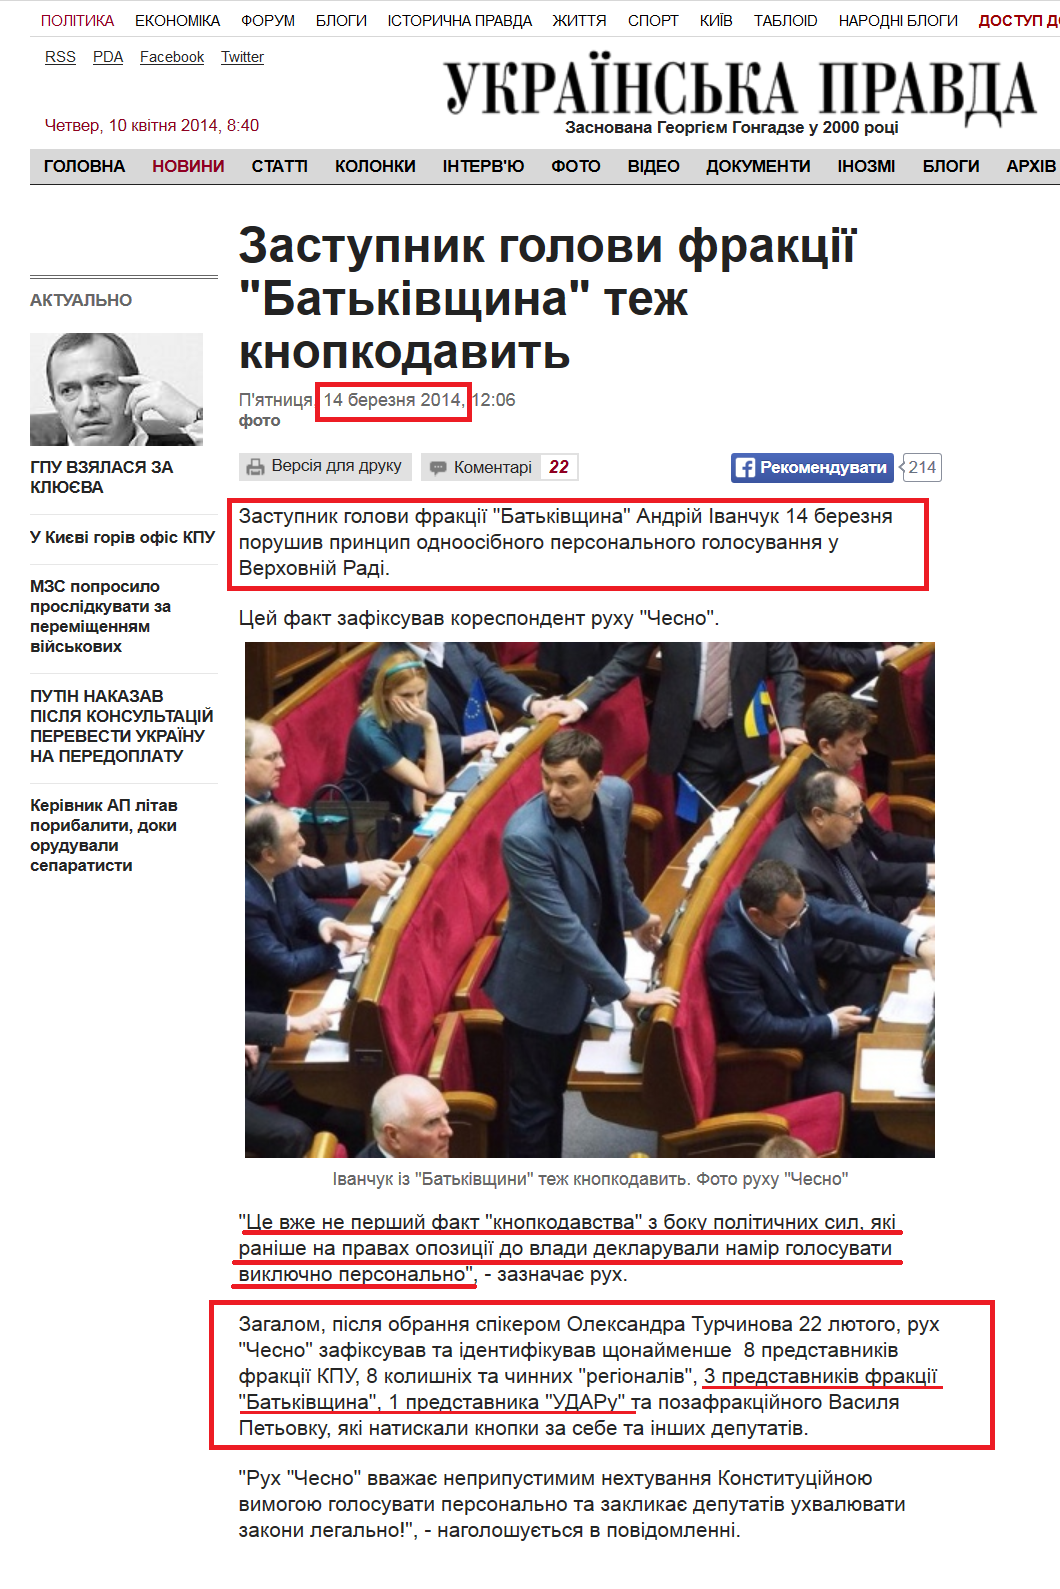 http://www.pravda.com.ua/news/2014/03/14/7018759/